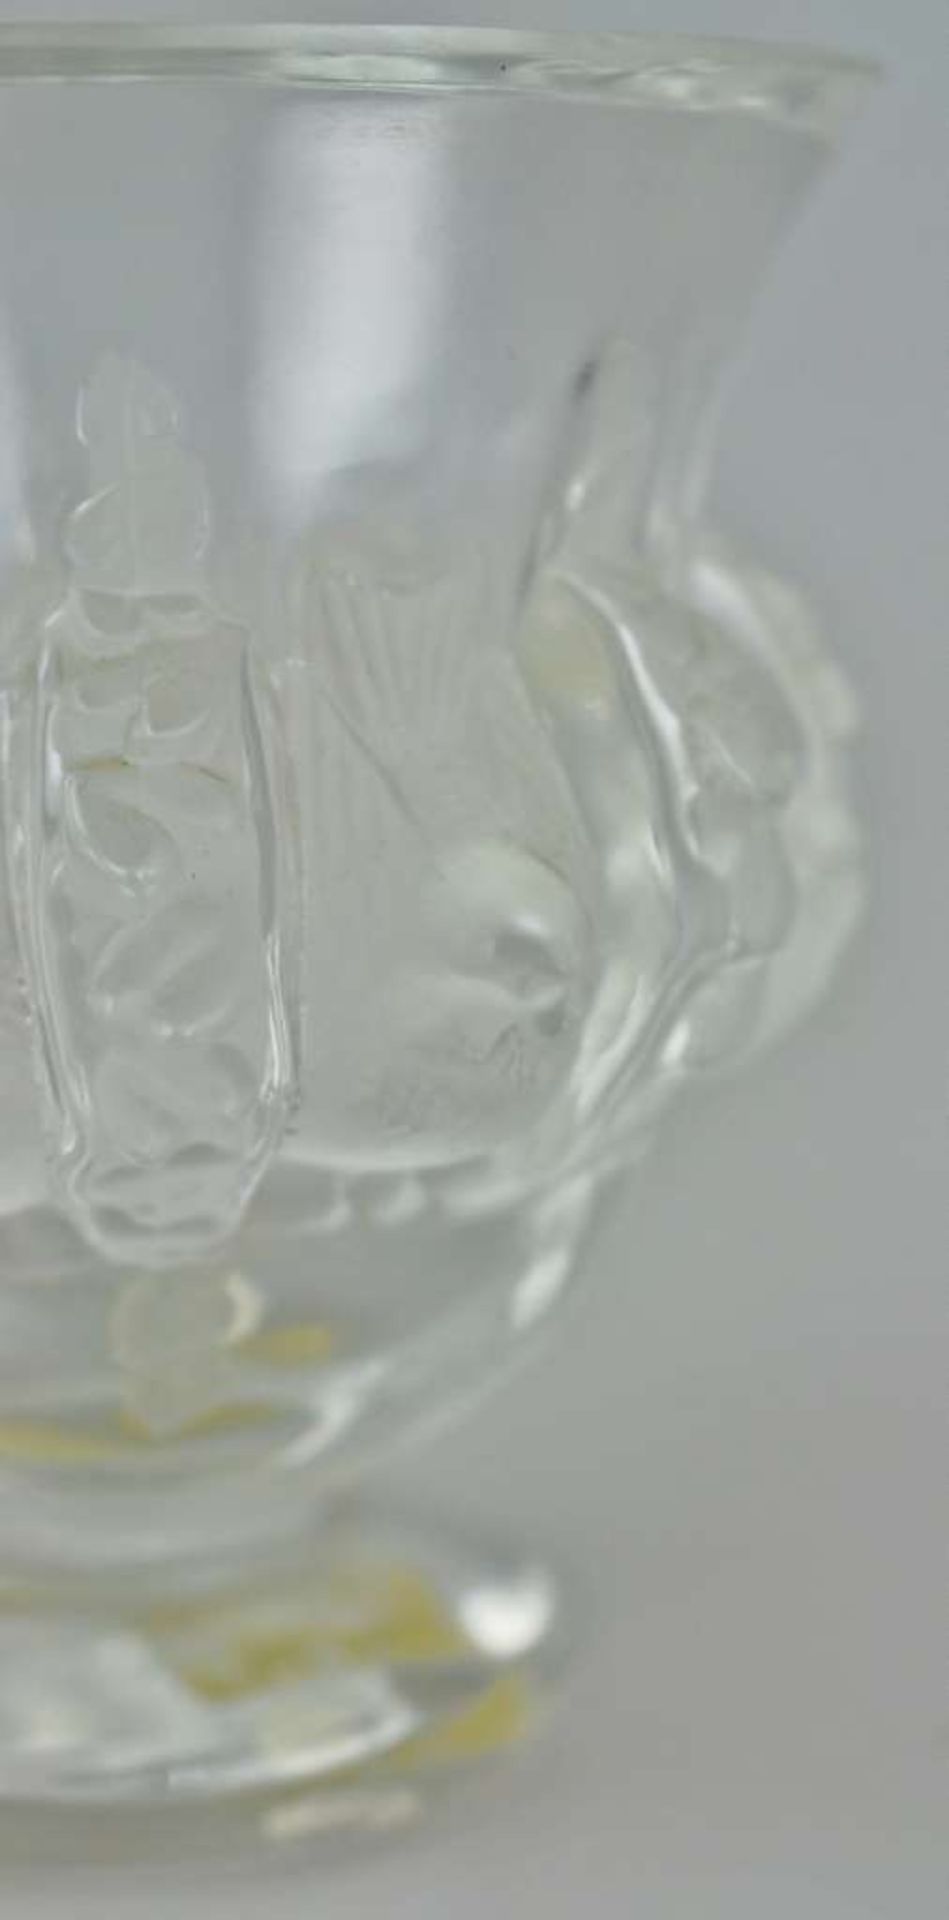 Lalique Vase, 20. Jh., Boden mit Ritzmarkung, etikettiert en Dampierre 12.230. Pressglas, - Bild 3 aus 3